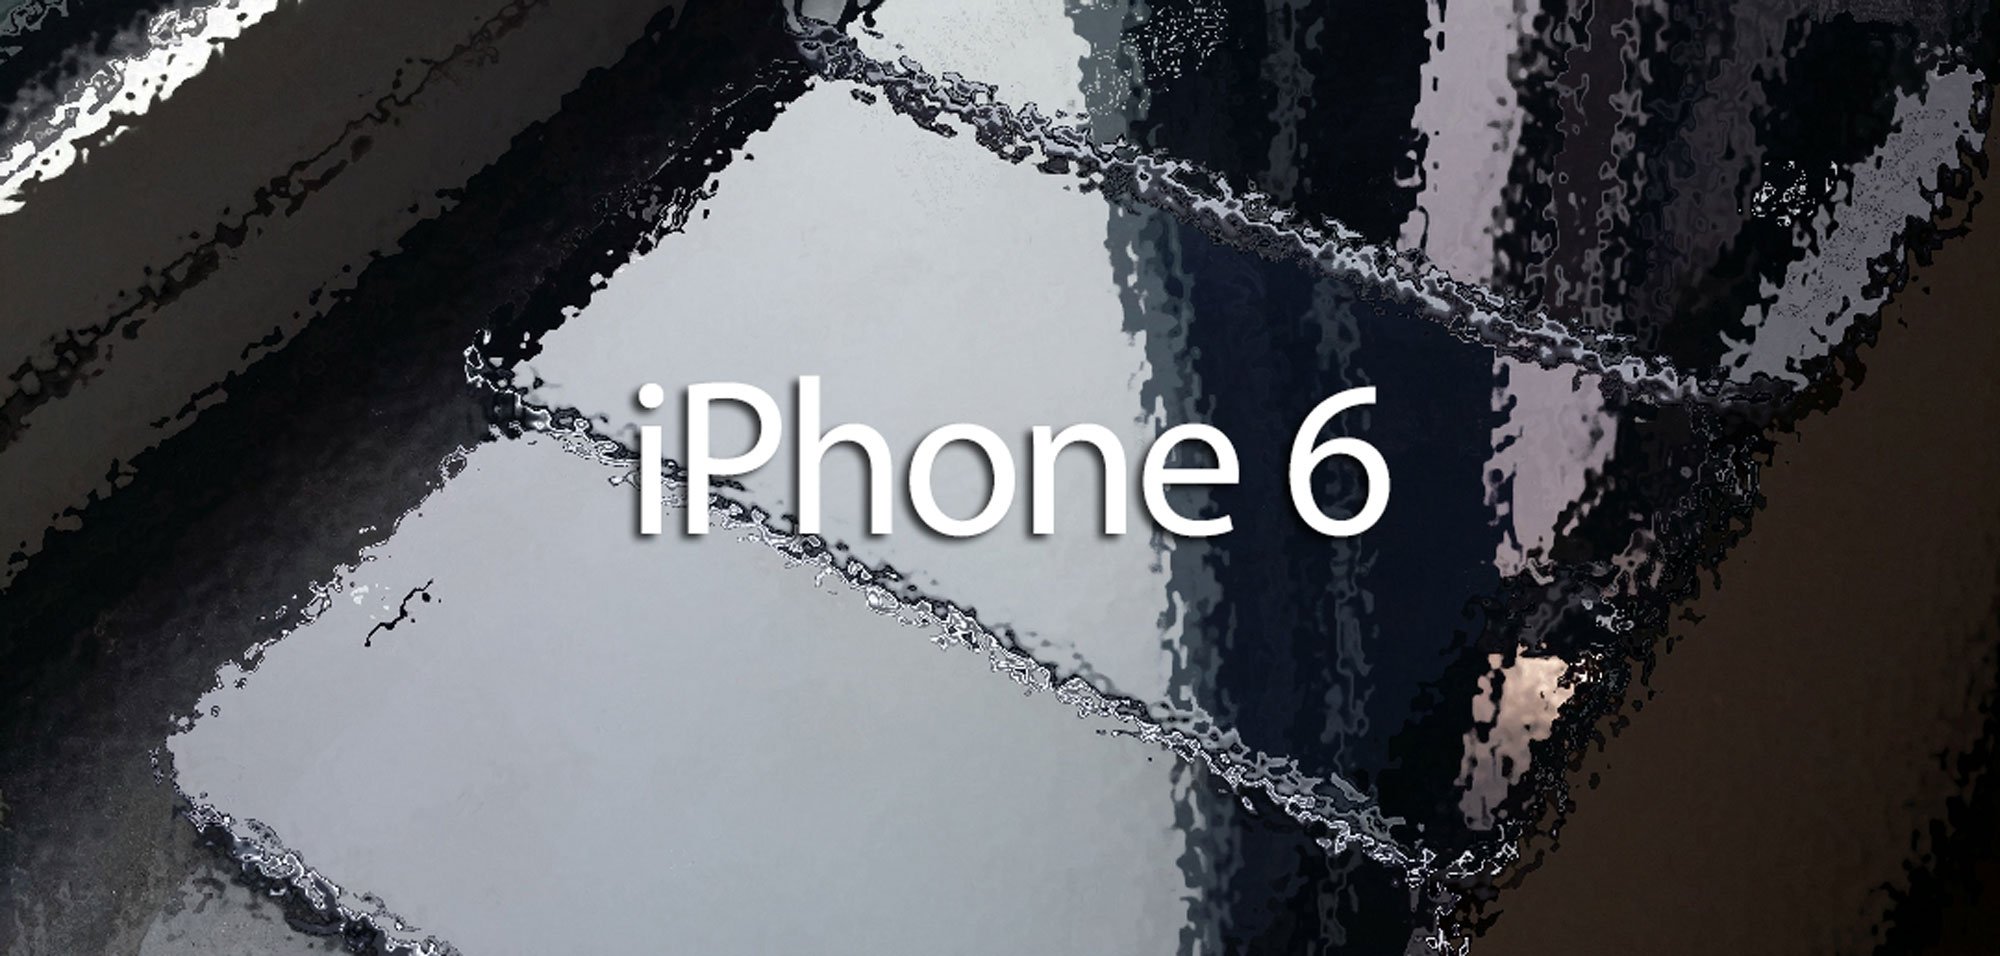 iPhone 6: Apple will alle Rekorde brechen! 3